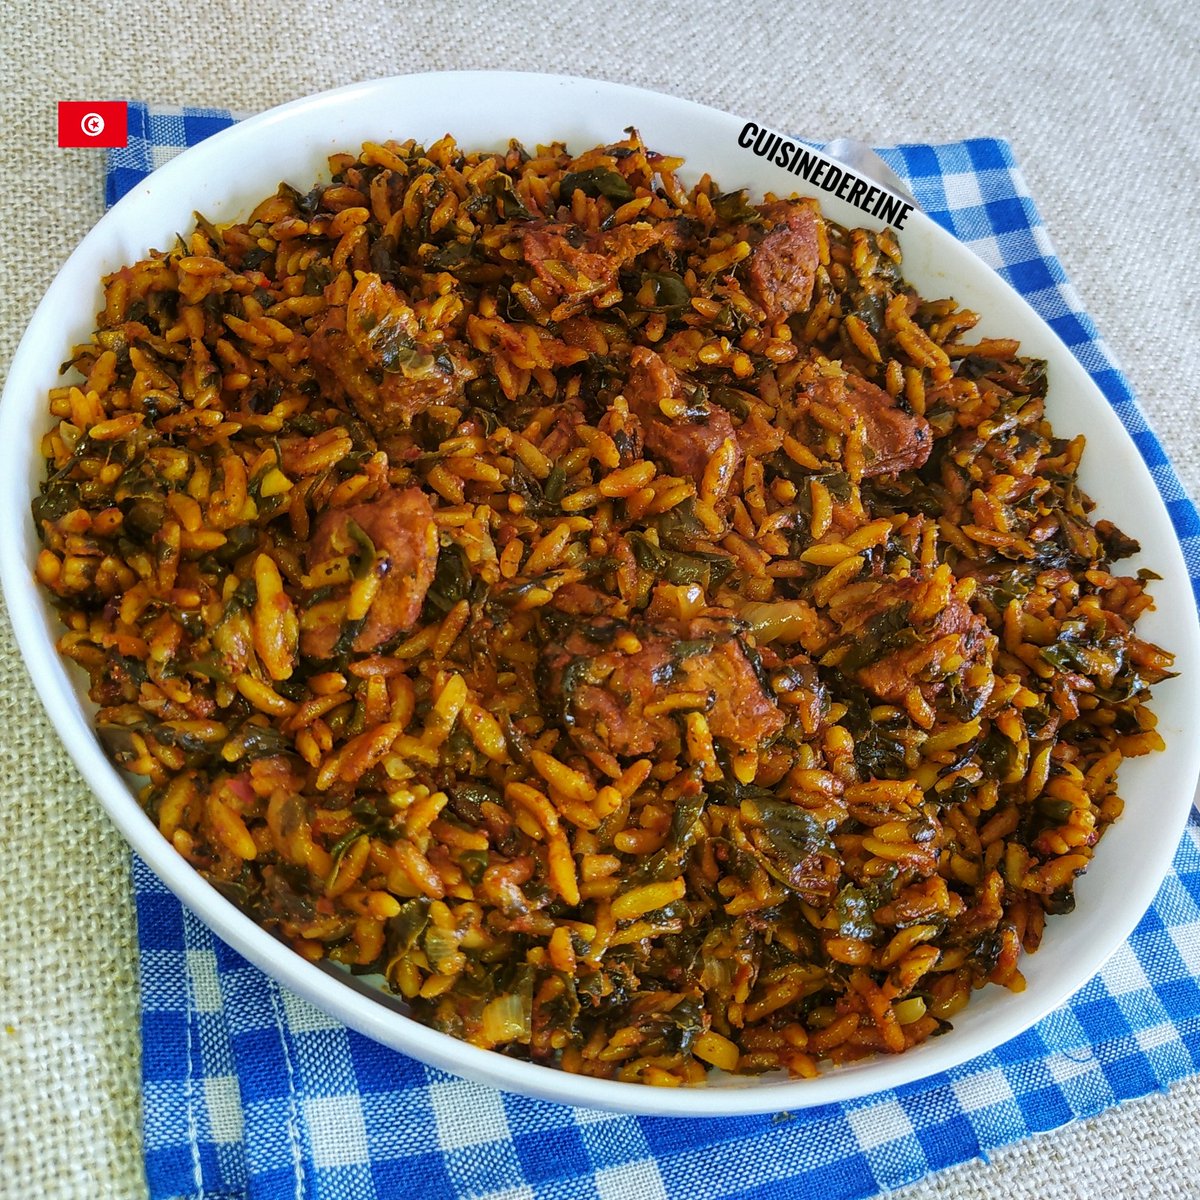 شربة على طريقة الروز الجربي 🇹🇳 طريقة التحضير بالفيديو: youtu.be/87CwoY4Dpxk?si… #Food #recipe #Tunisia